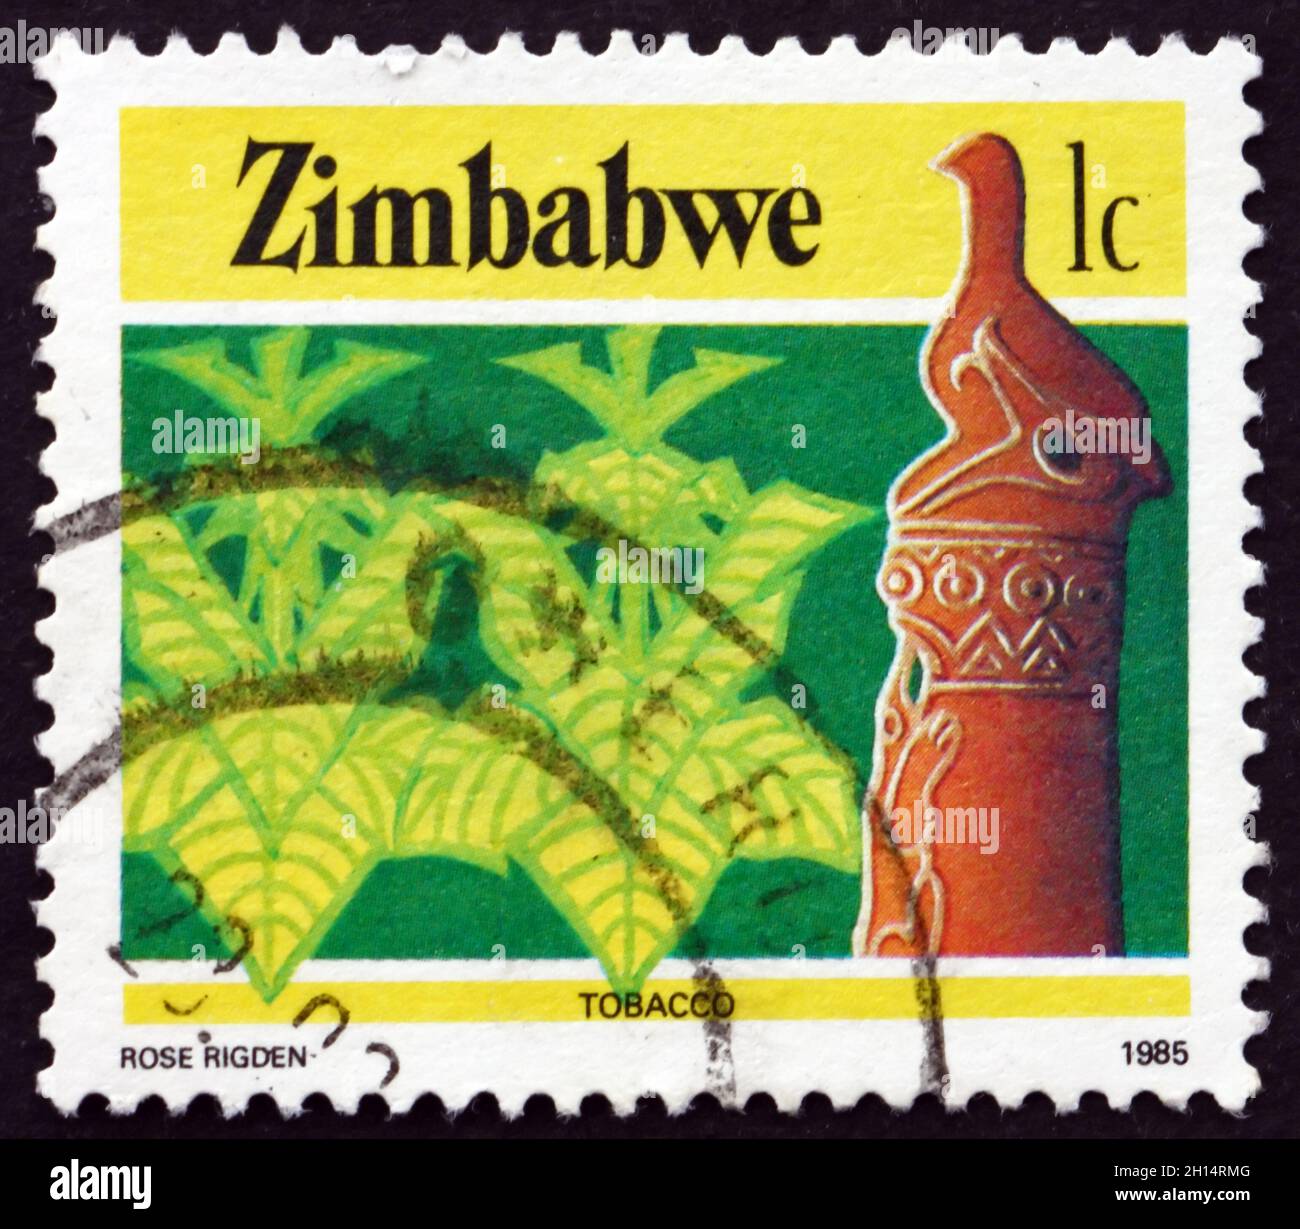 ZIMBABWE - VERS 1985 : un timbre imprimé au Zimbabwe montre l'oiseau et le tabac du Zimbabwe, l'agriculture, vers 1985 Banque D'Images